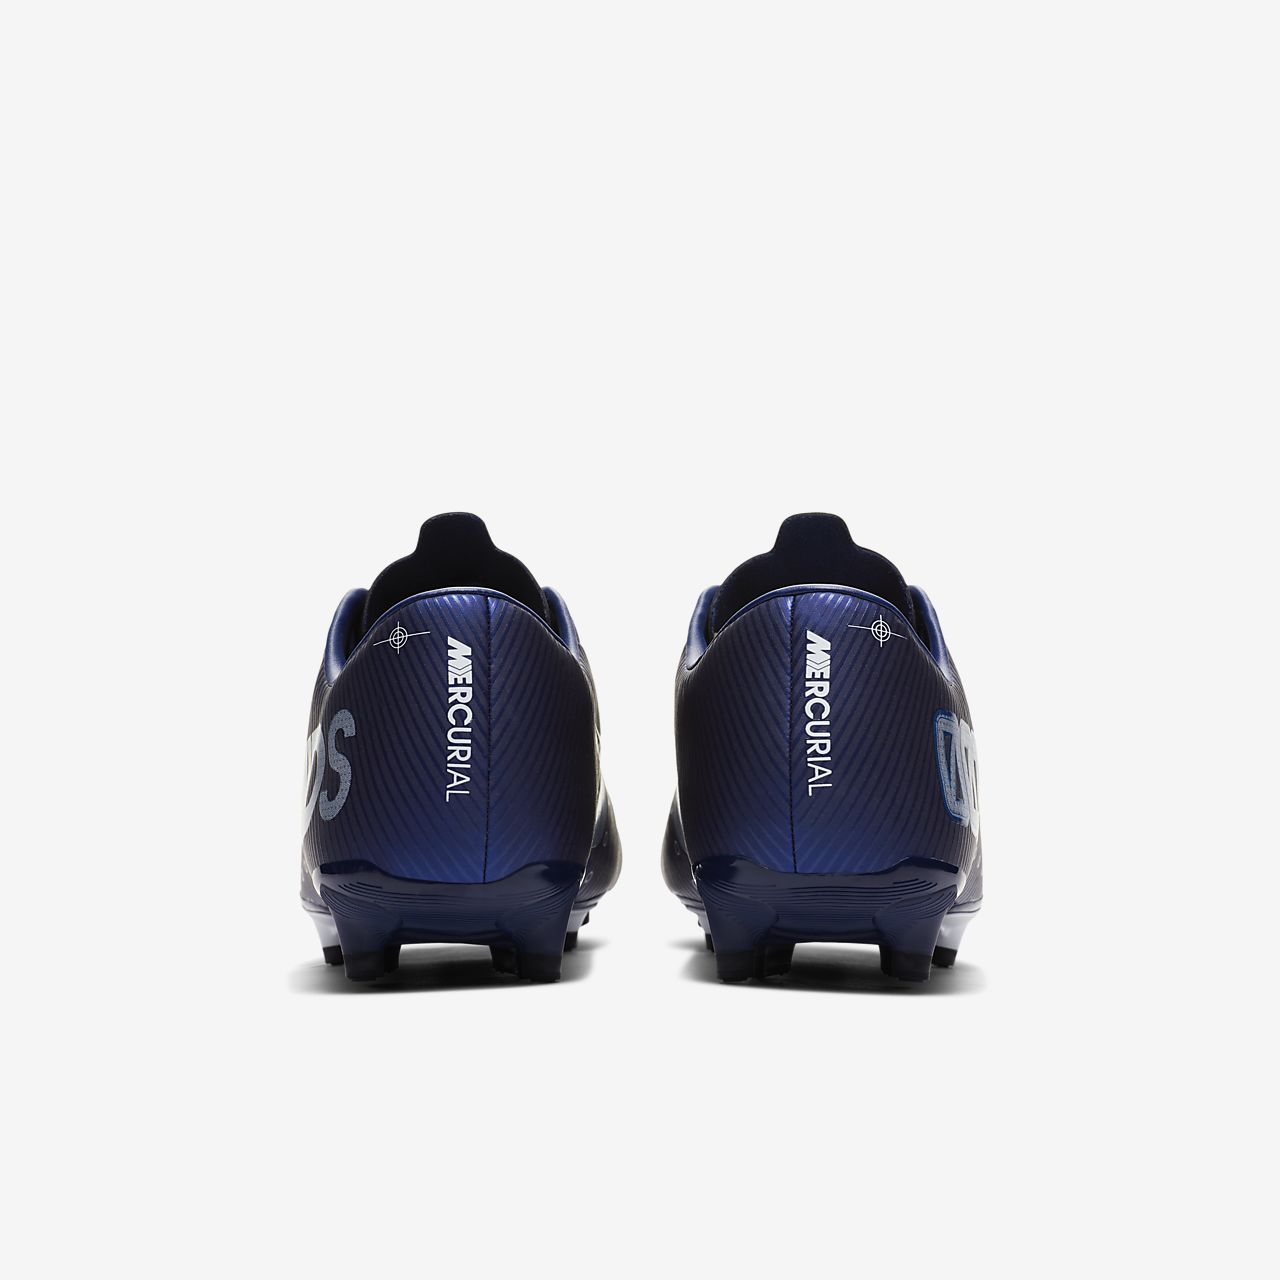 Nike Mercurial Vapor 360 Elite AG PRO Men's Size 12 eBay